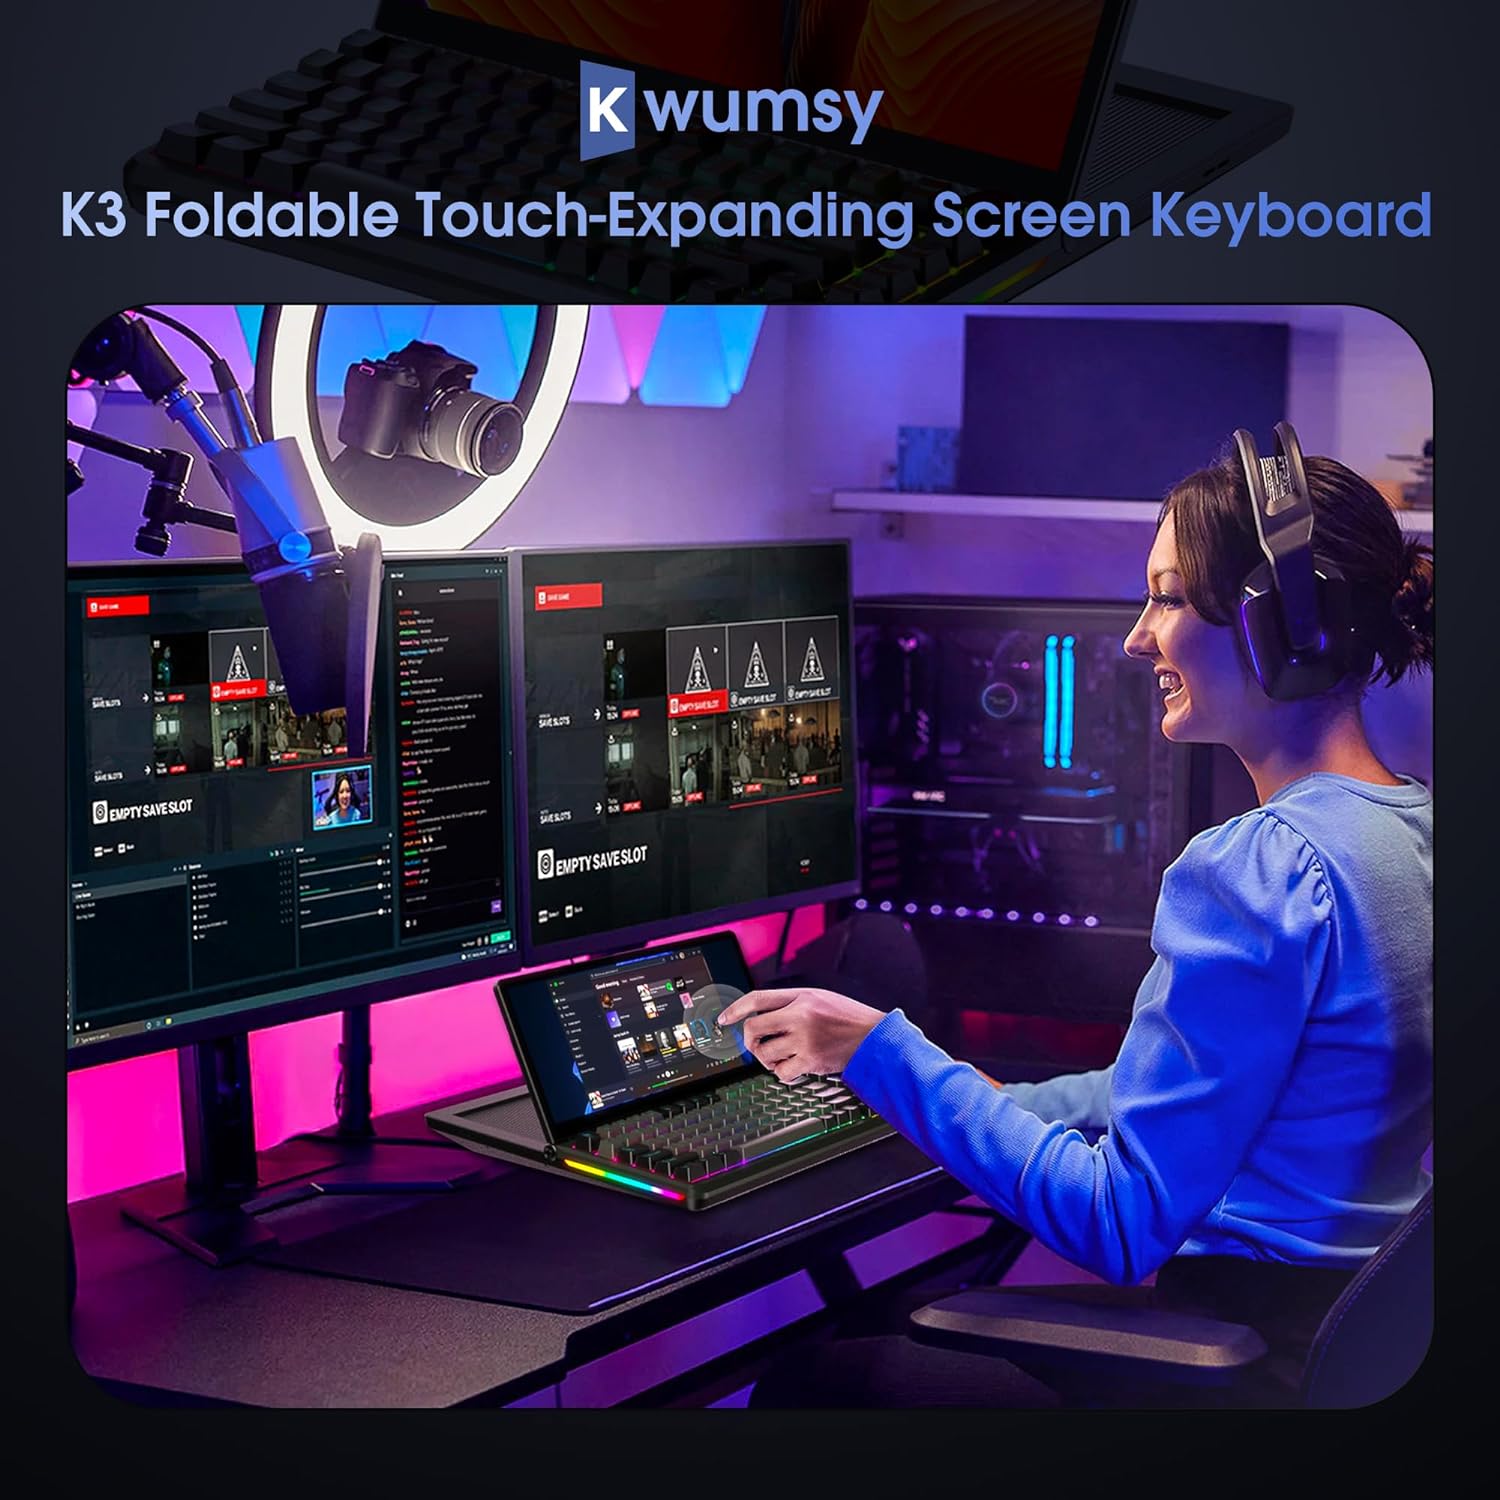 Tastatur mit Kwumsy K3-Erweiterungshaube